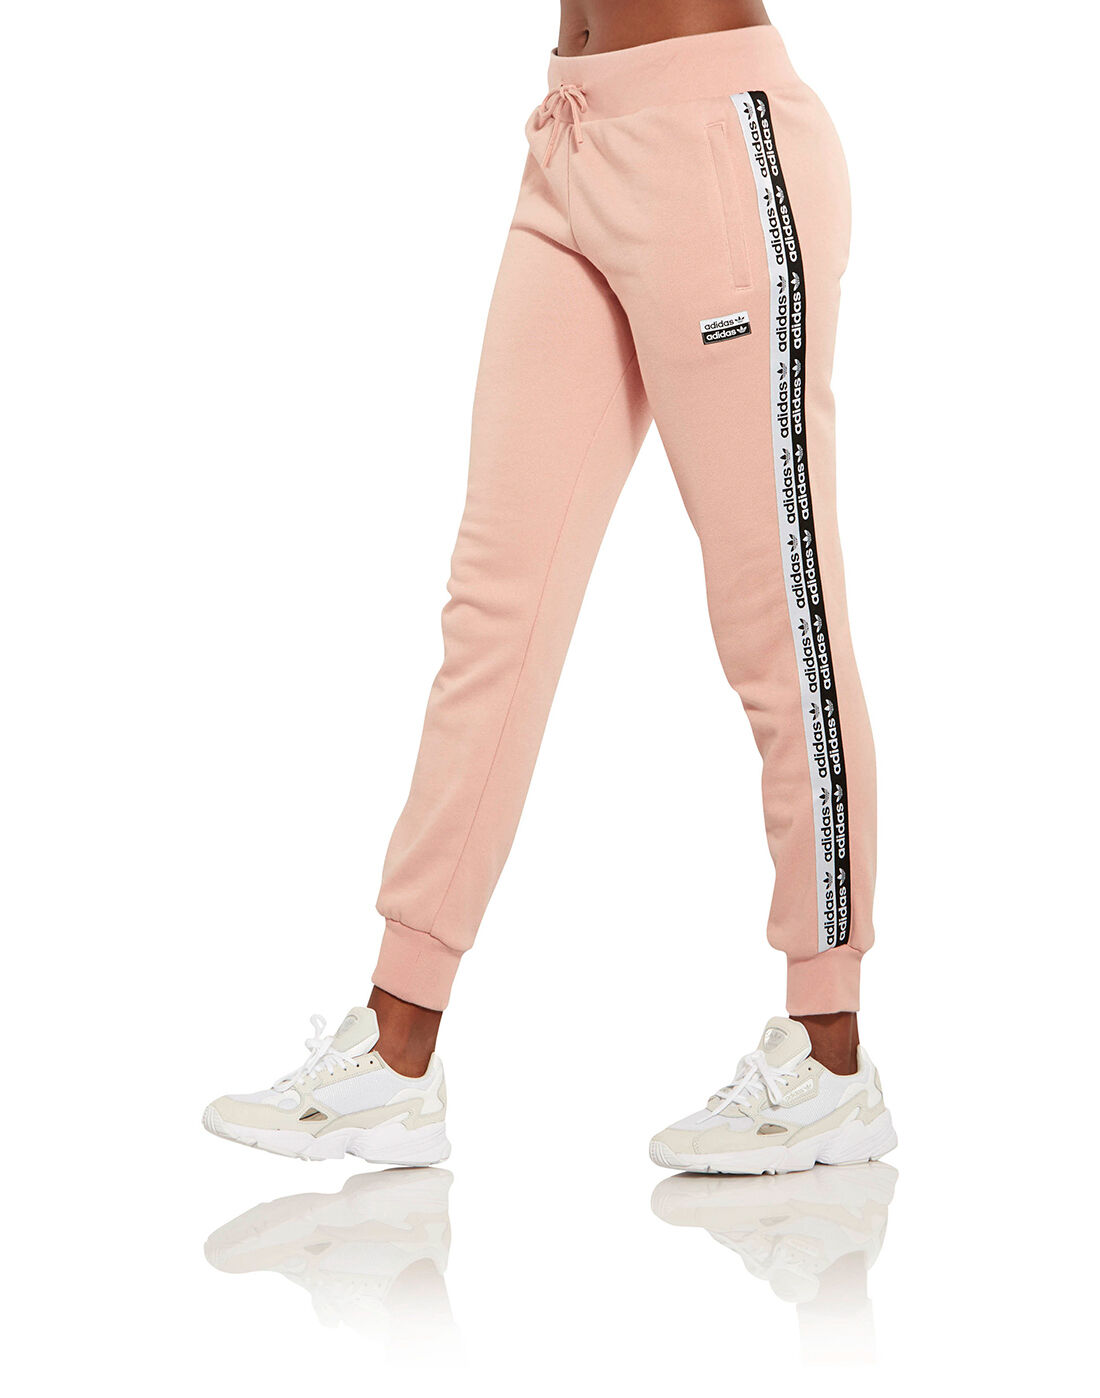 adidas cuffed pants pink